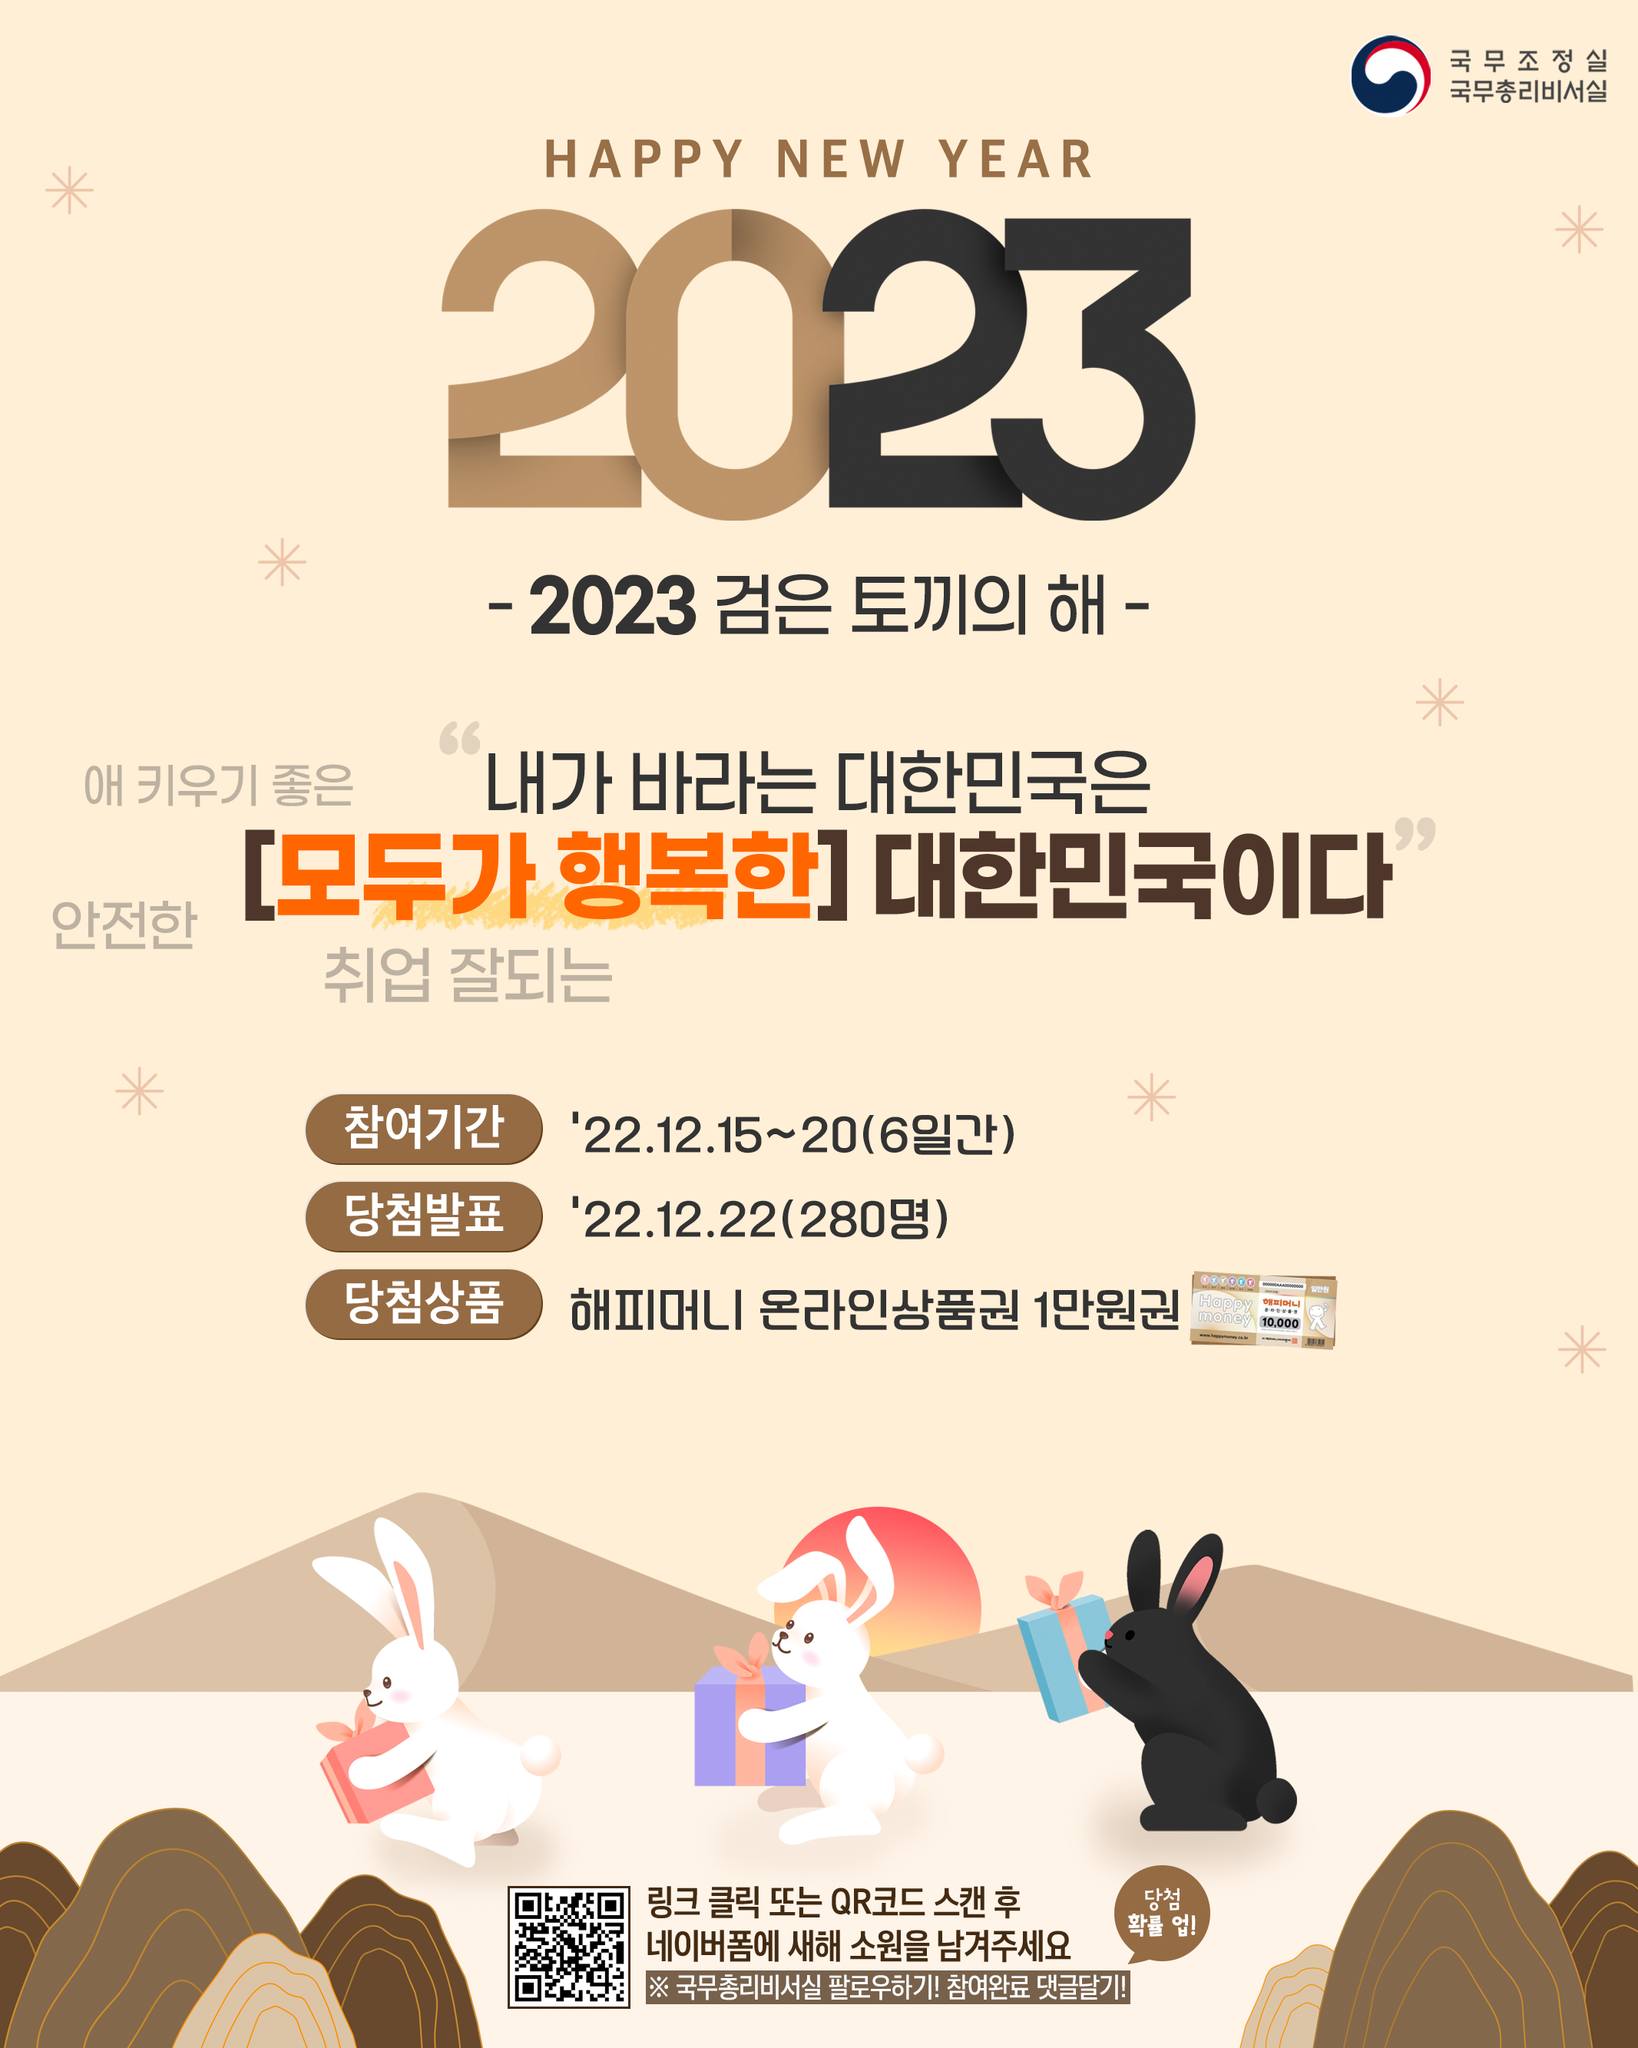 2023년 새해, 내가 바라는 대한민국은?